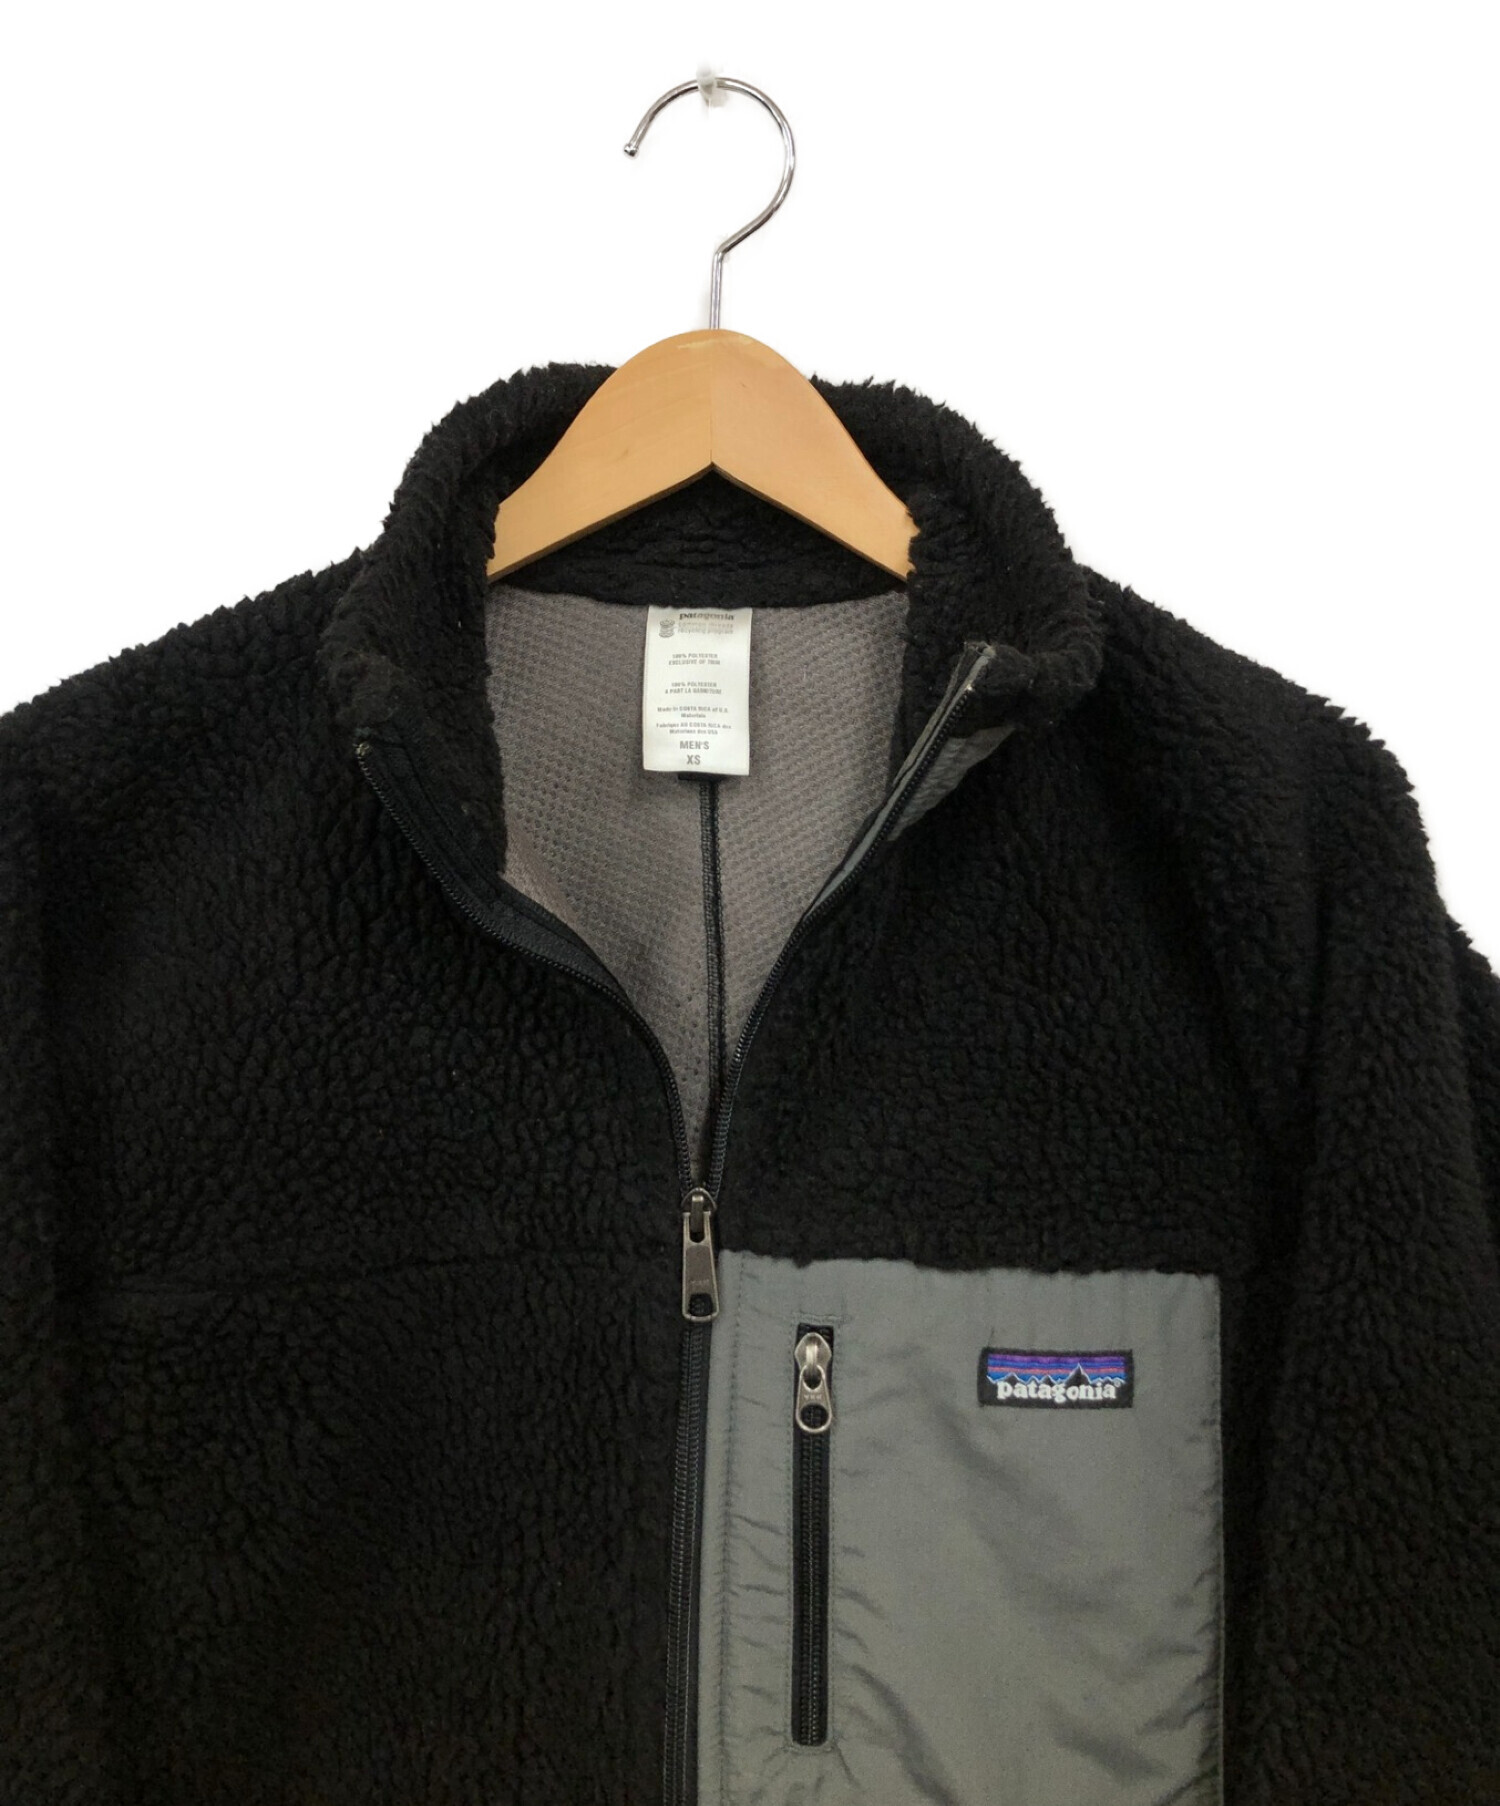 Patagonia (パタゴニア) フリースジャケット ブラック×グレー サイズ:XS